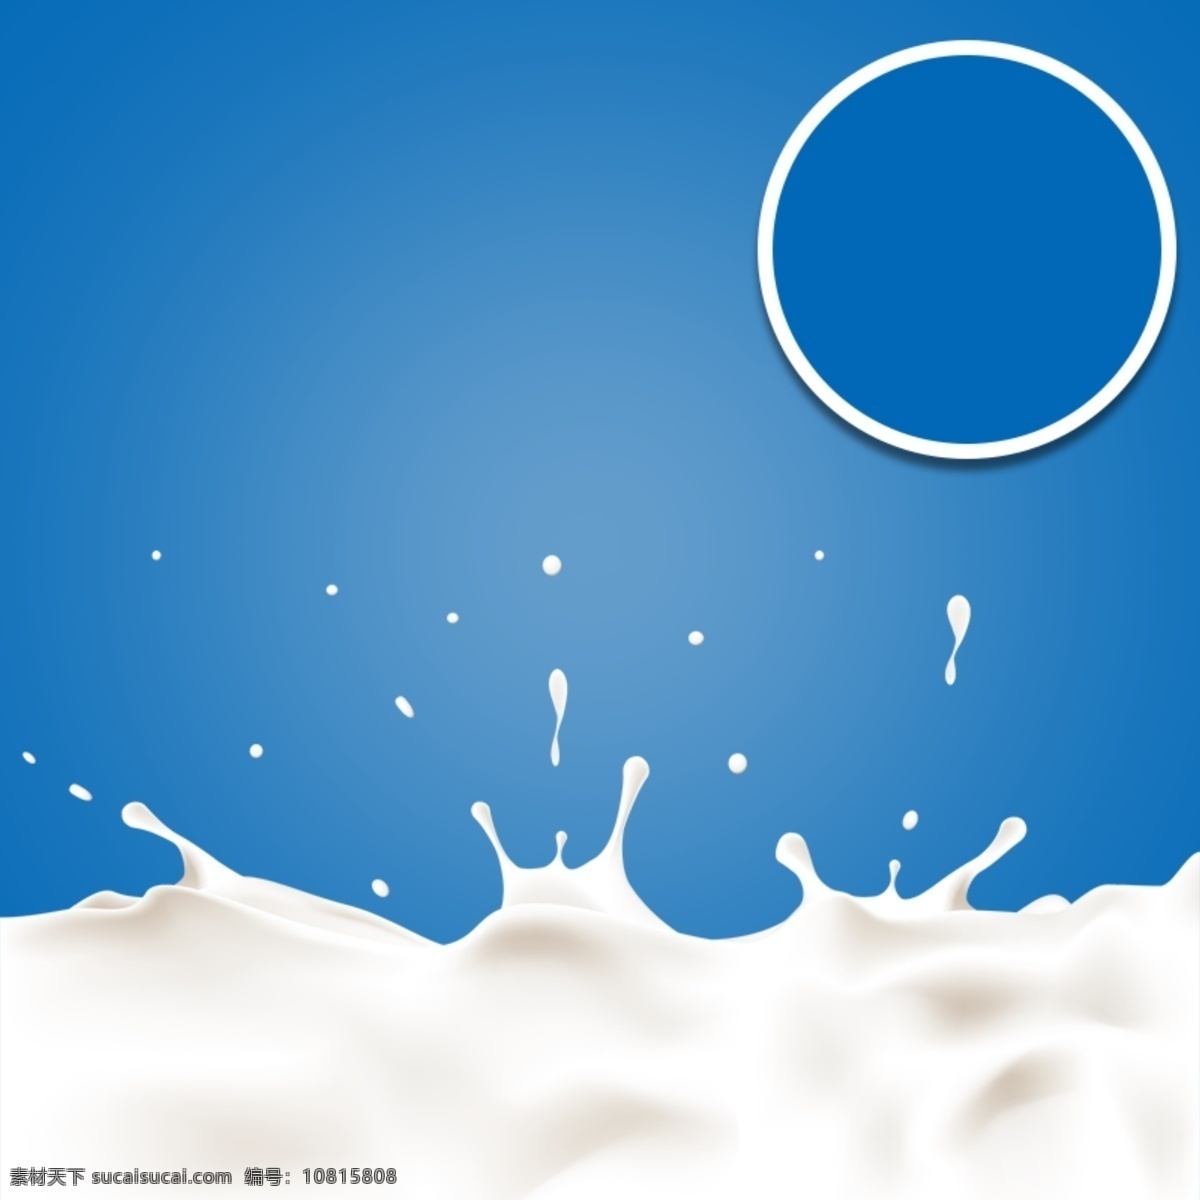 食物 牛奶 宣传海报 广告 矢量 背景 奶油 丝滑 丝绸 质感 牛奶海报 牛奶宣传广告 广告背景 食物背景 矢量素材